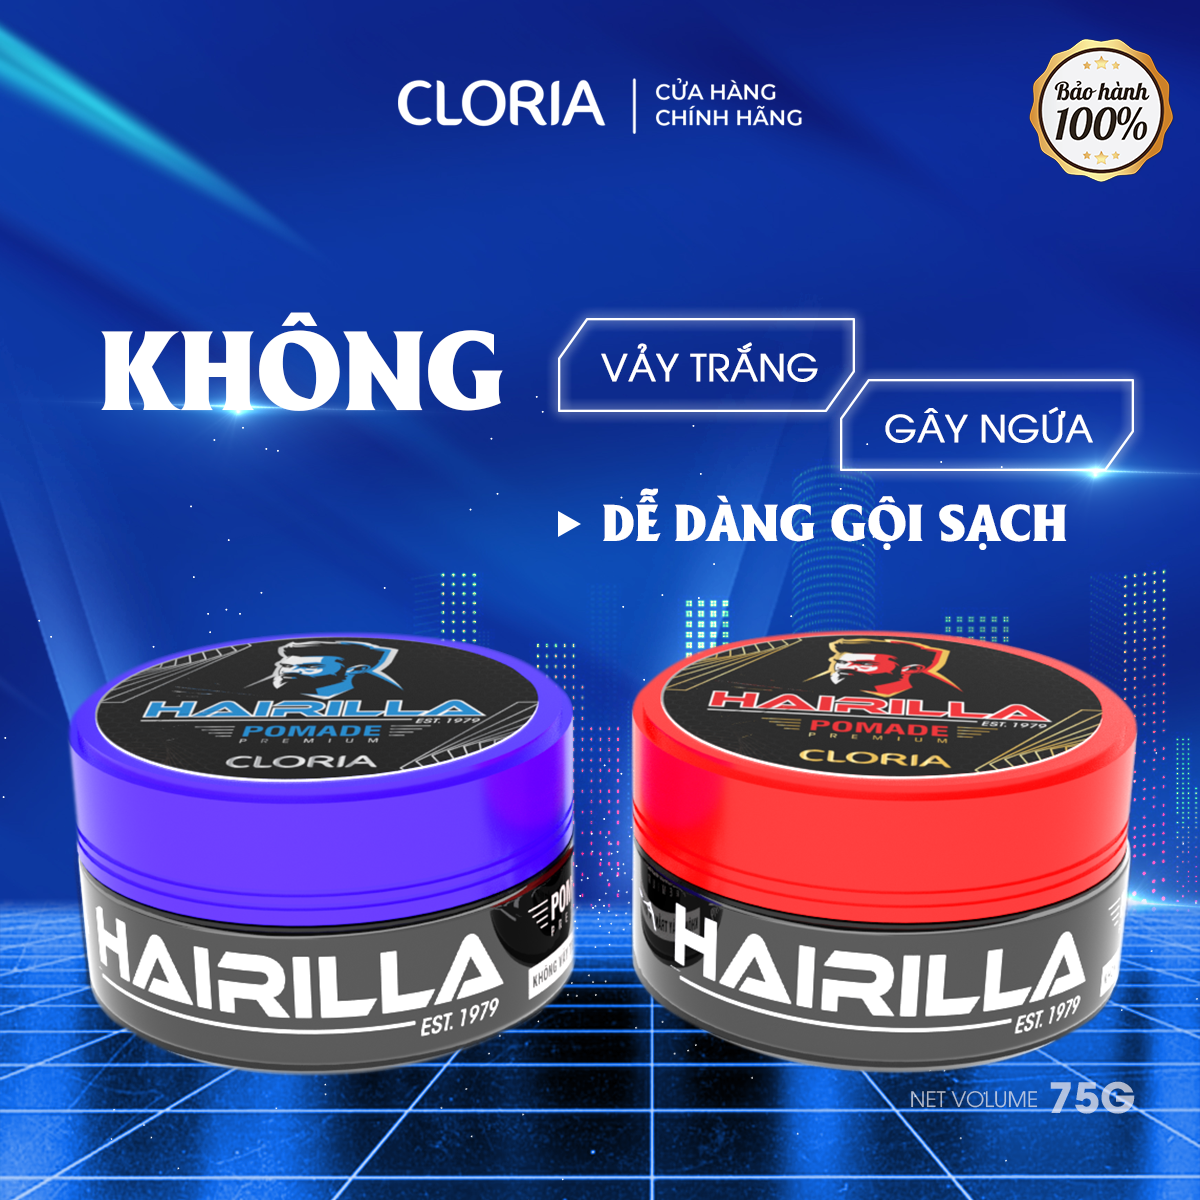 Pomade tạo nếp tóc Hairilla Cloria dành cho phái mạnh (75g) 